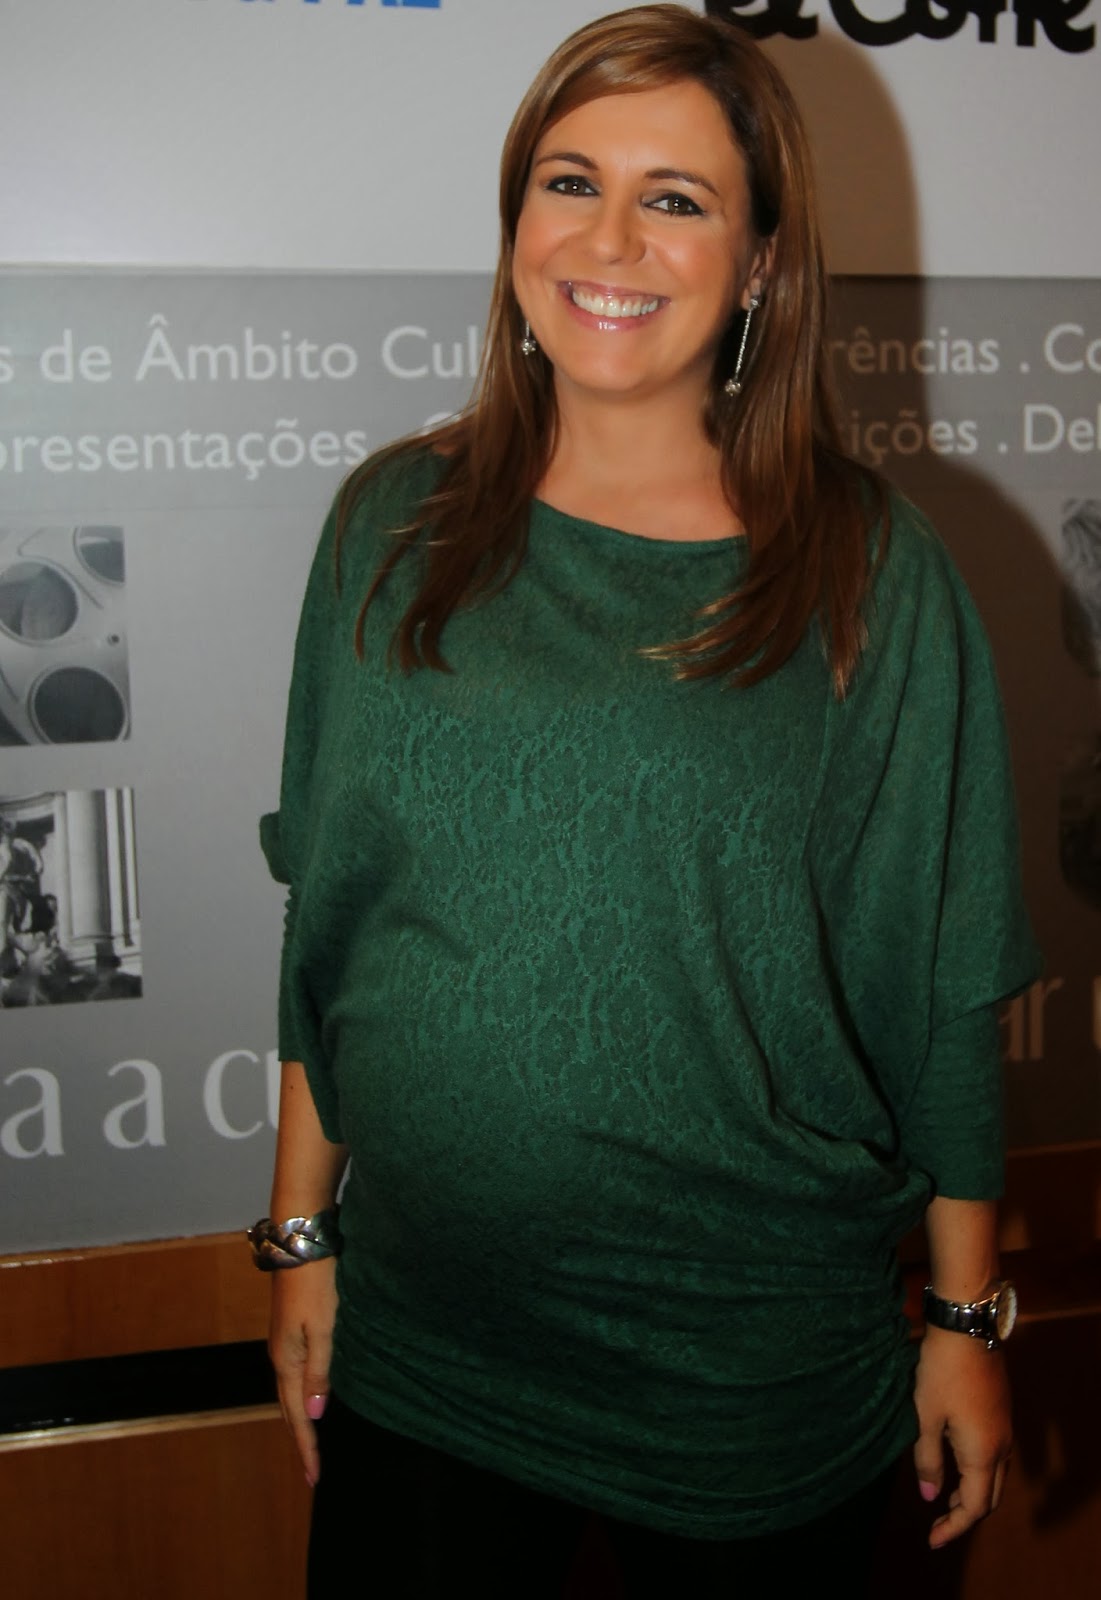 Perfil e fotos de Tânia Ribas de Oliveira - Boas.pt ...